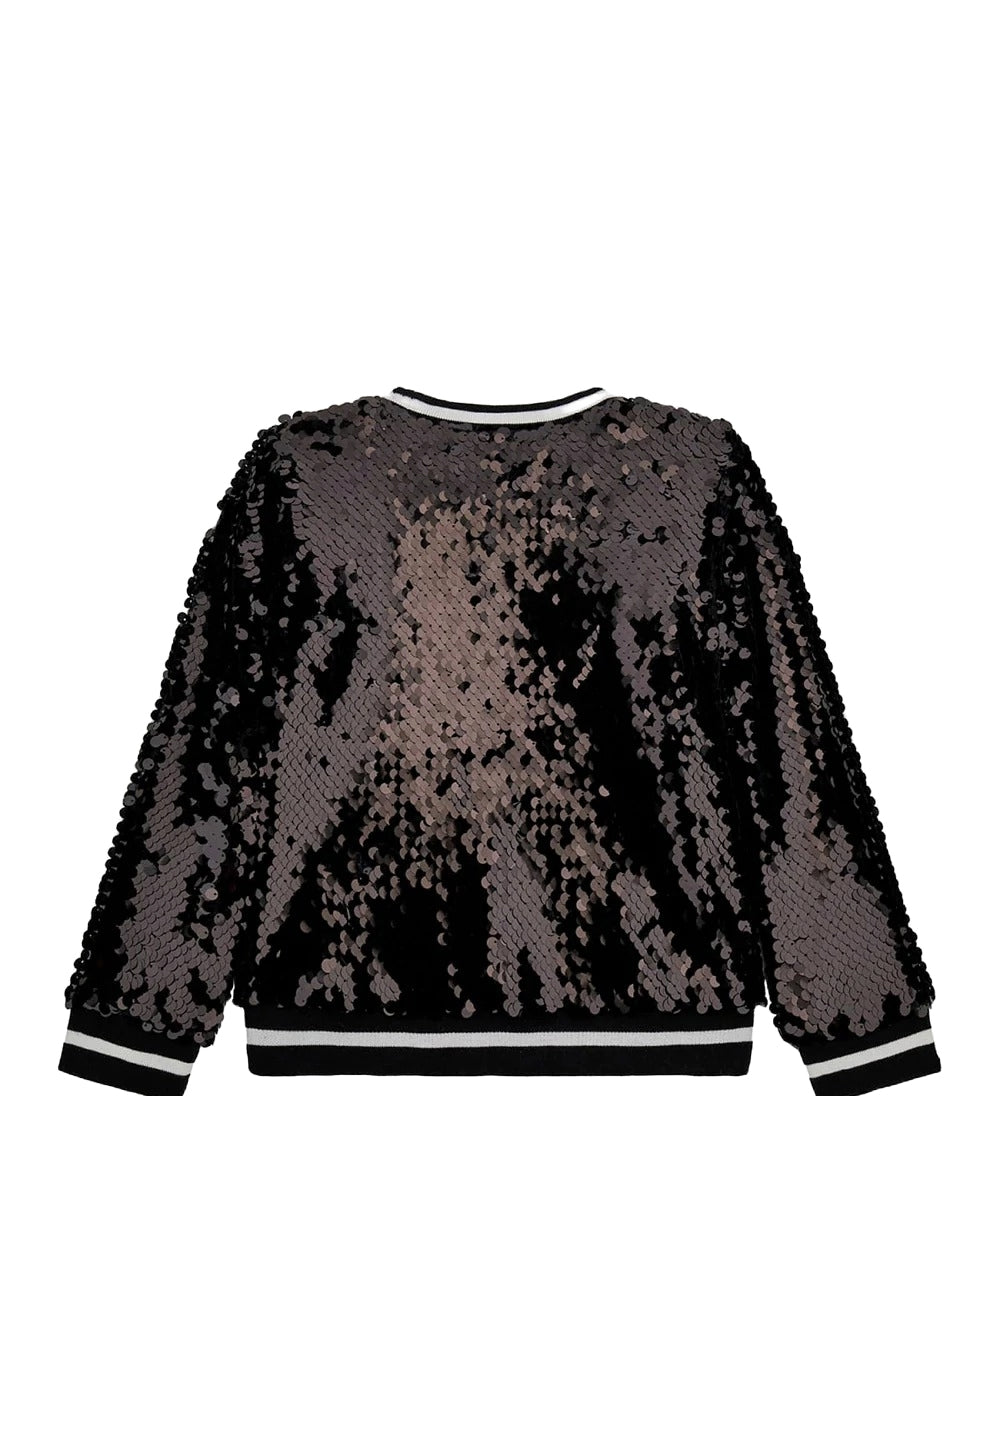 Black sequined sweatshirt for girls